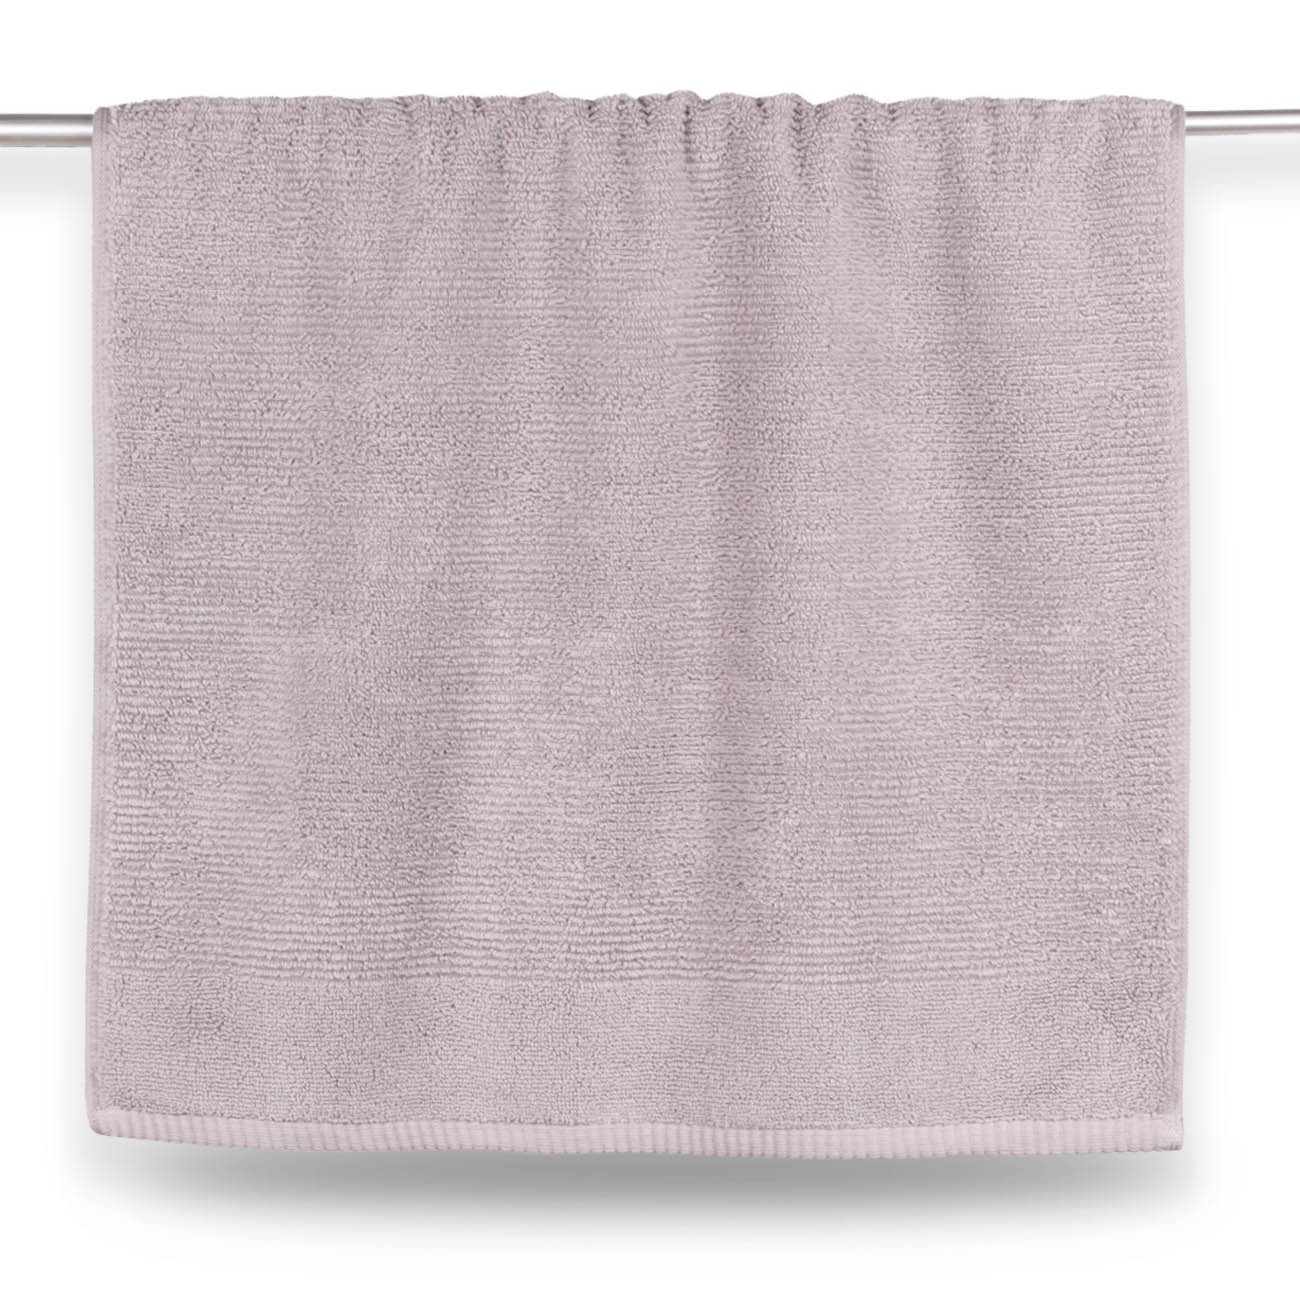 Towel, 50x90 cm, cotton, purple, Terry cotton изображение № 3